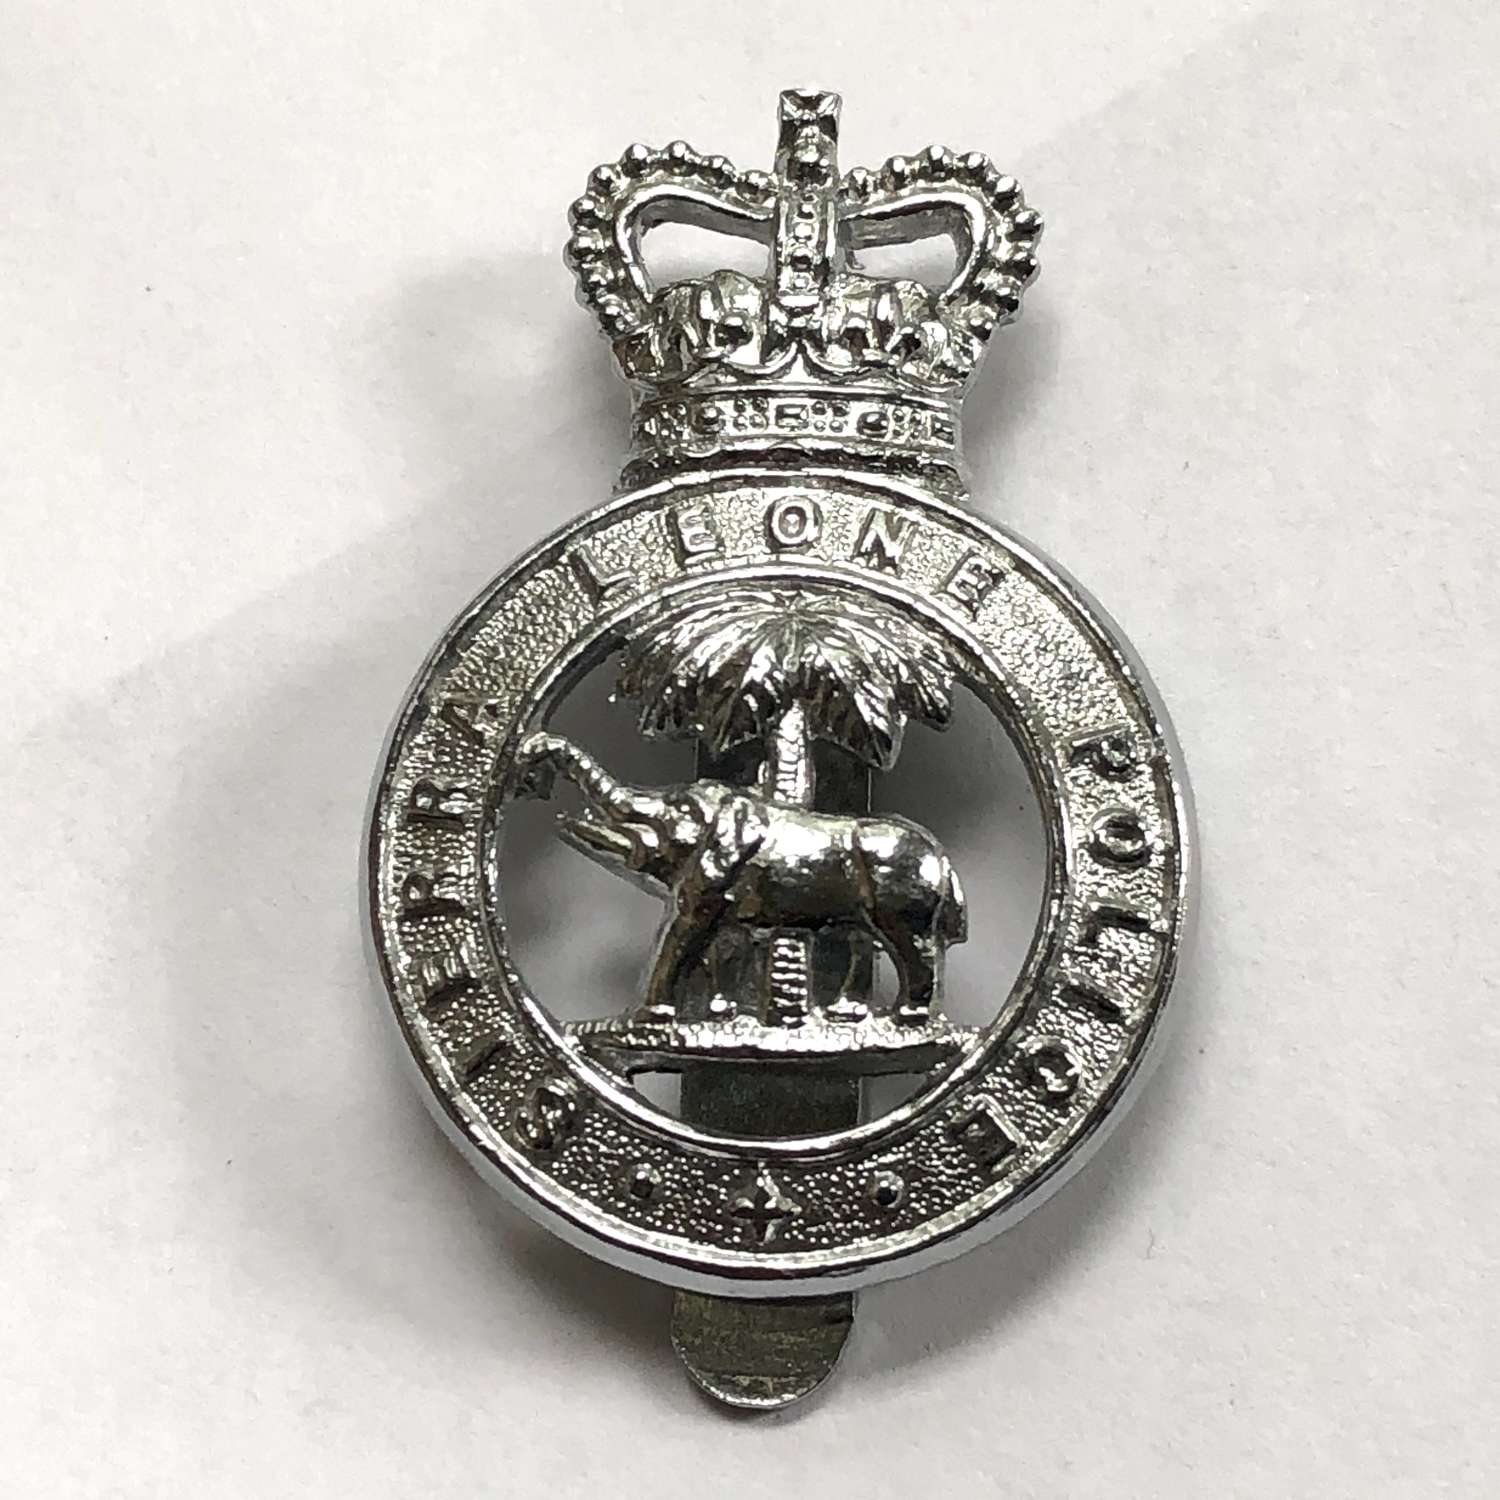 Sierra Leone Police post 1953 cap badge by Firmin, London